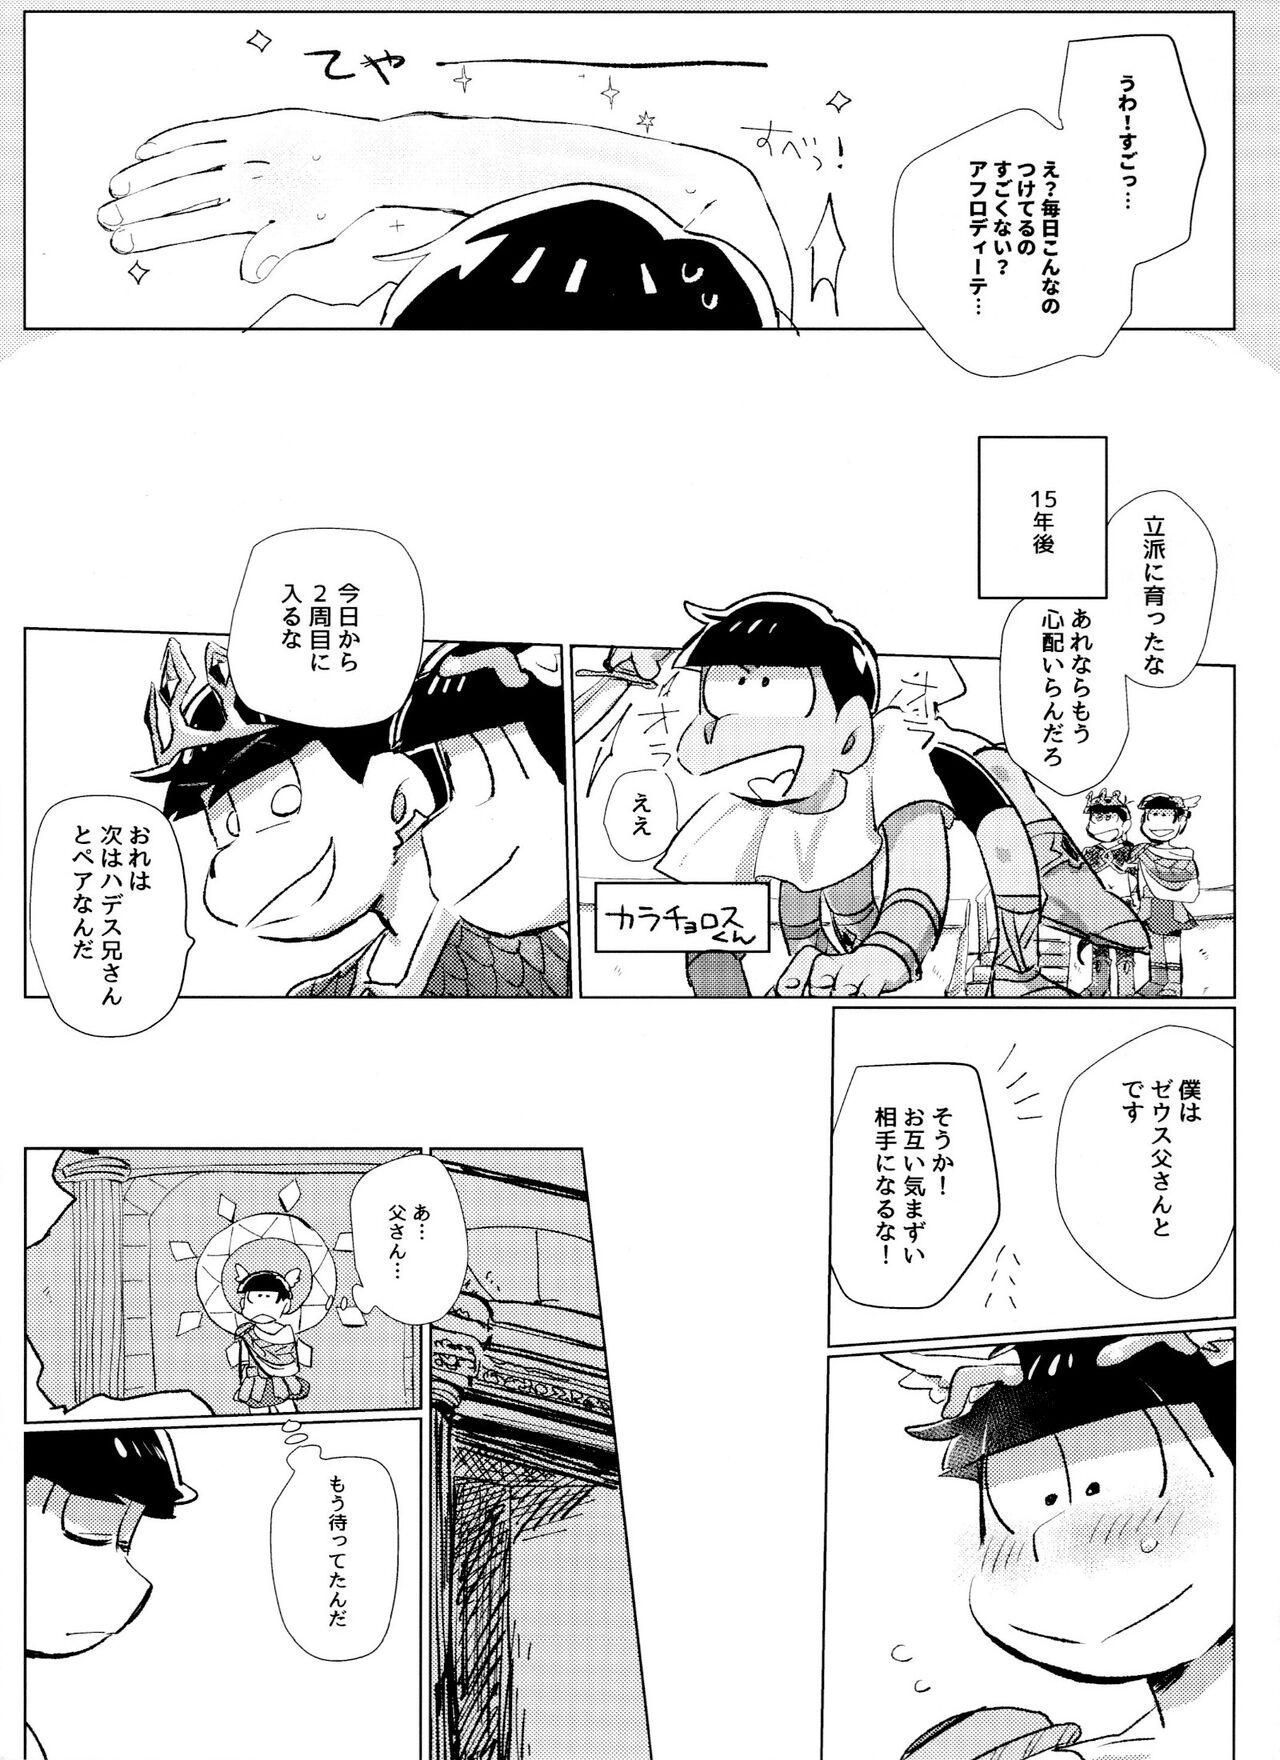 Upskirt [Handa gote sakka (handa)] Zeuapo-ko-tsukuri shinwa (Osomatsu-San) - Osomatsu san Analplay - Page 10